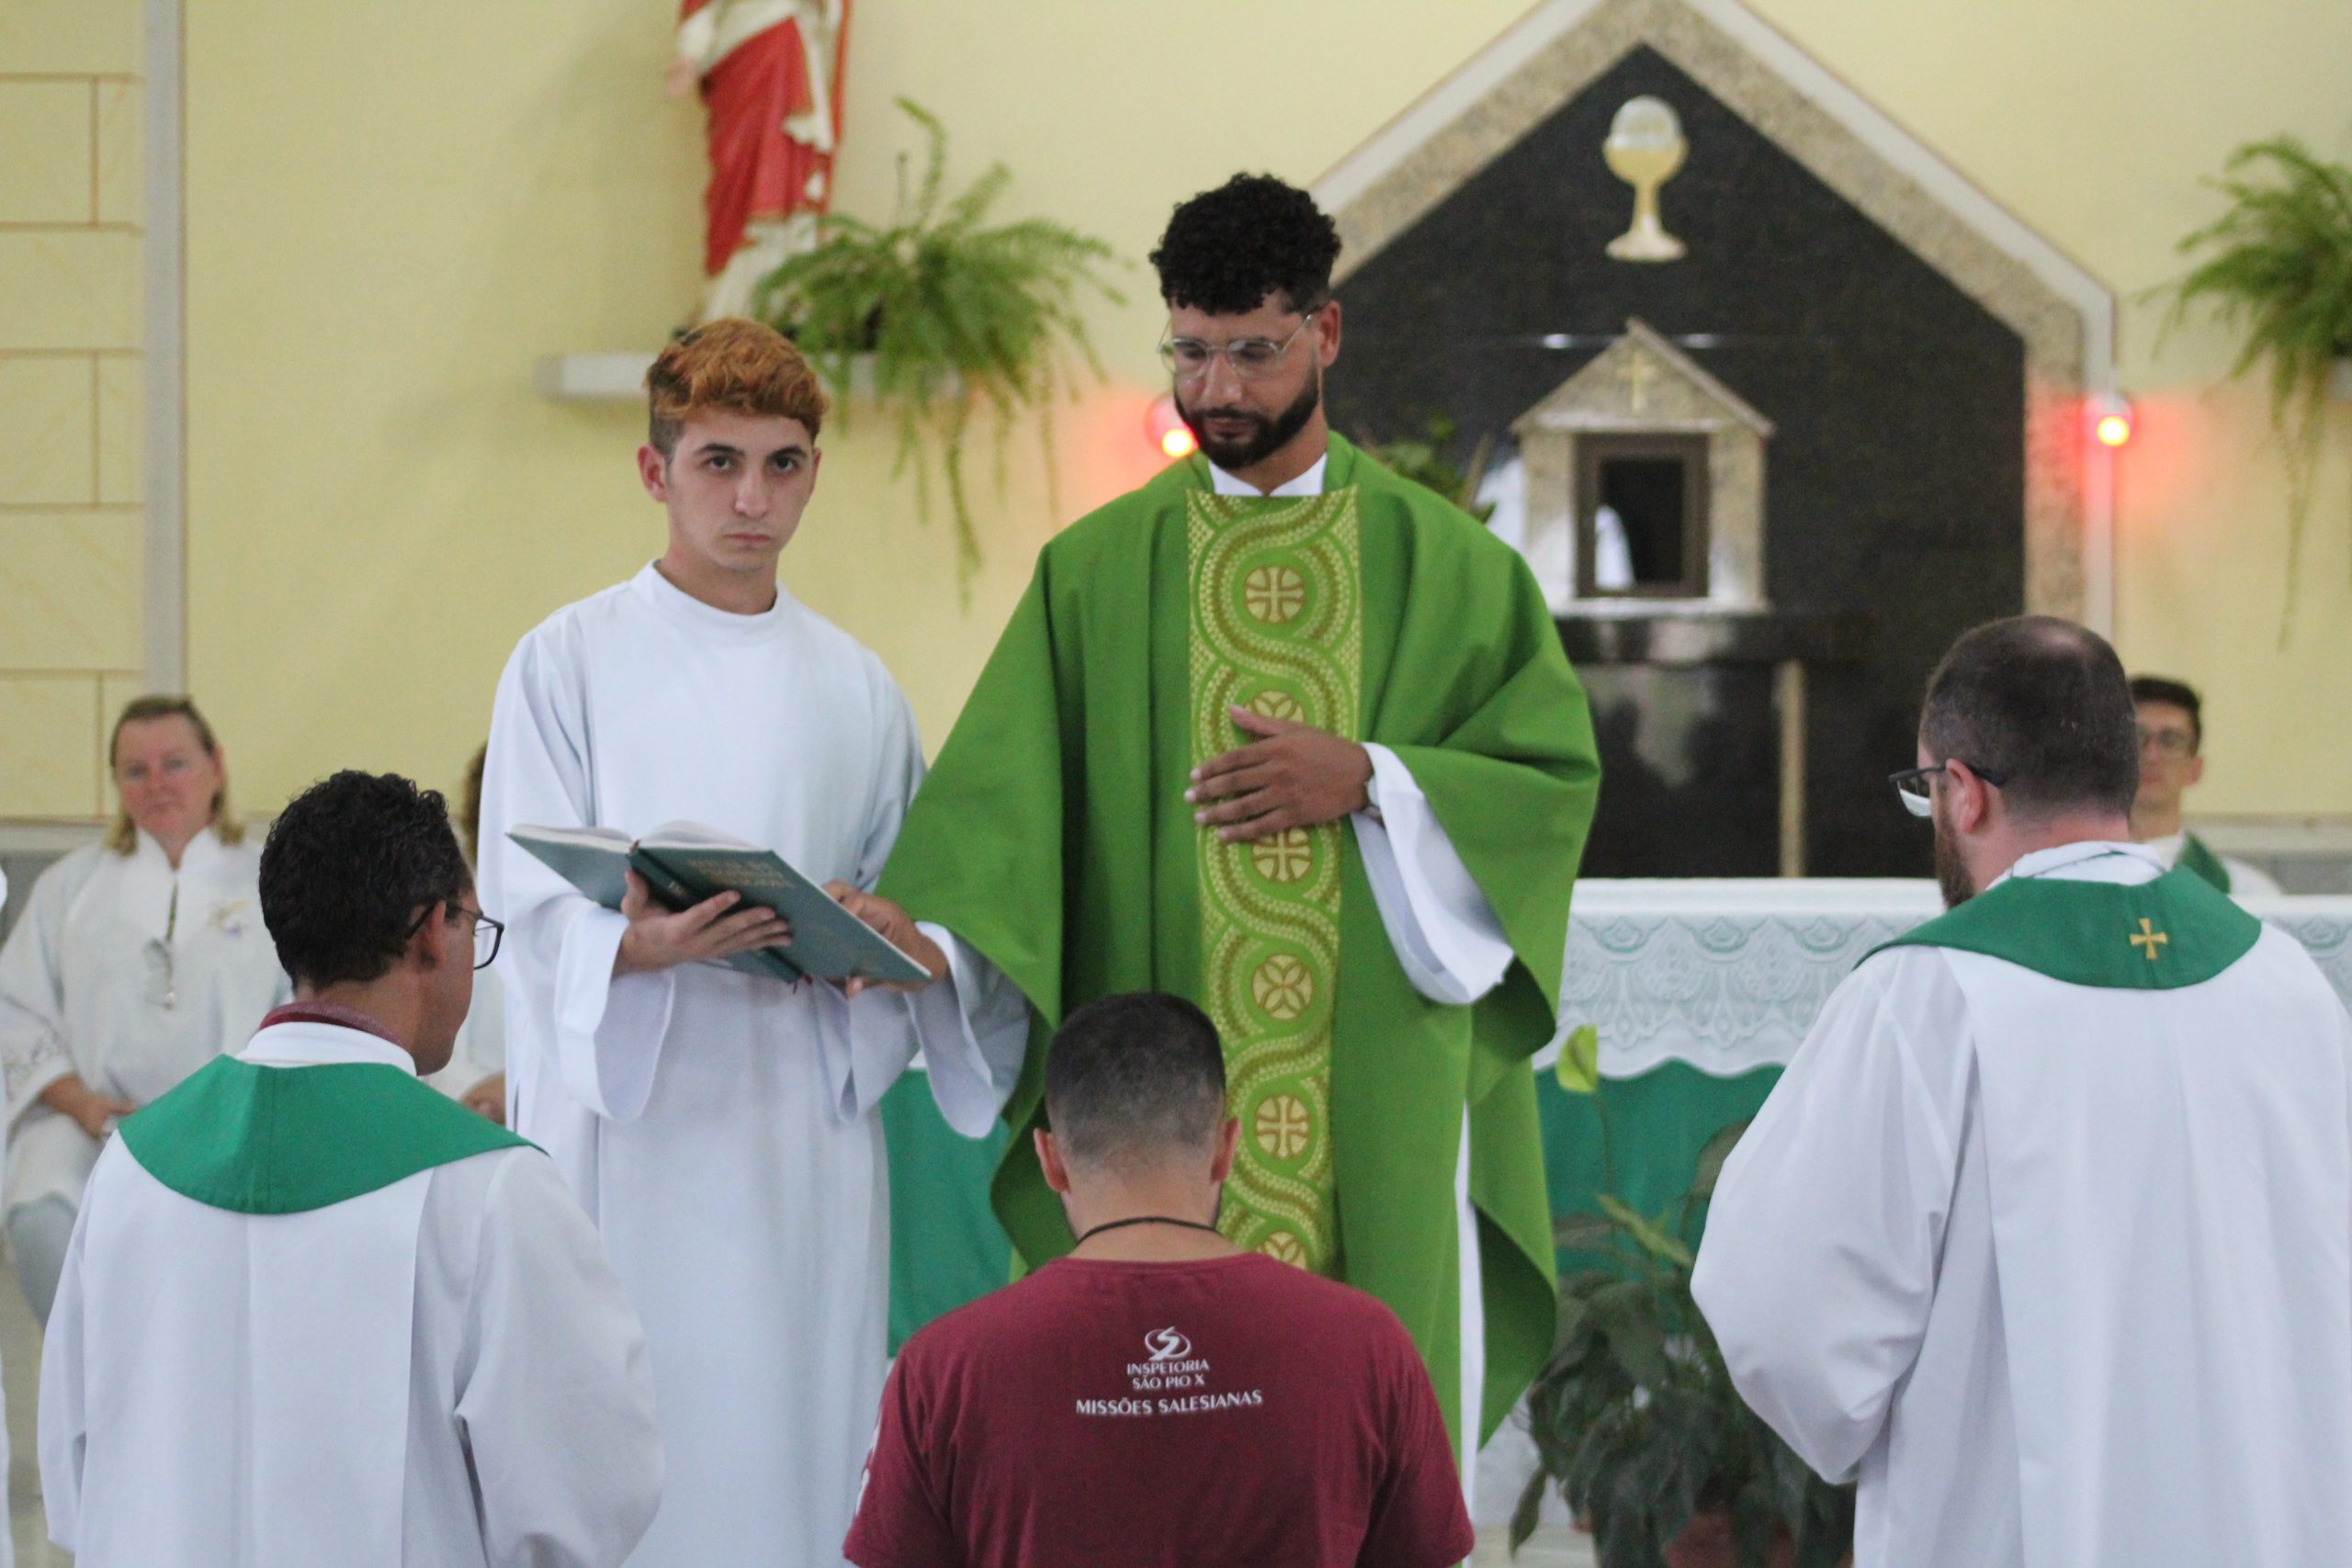 Formandos renovam votos religiosos no Projeto Missionário Juvenil